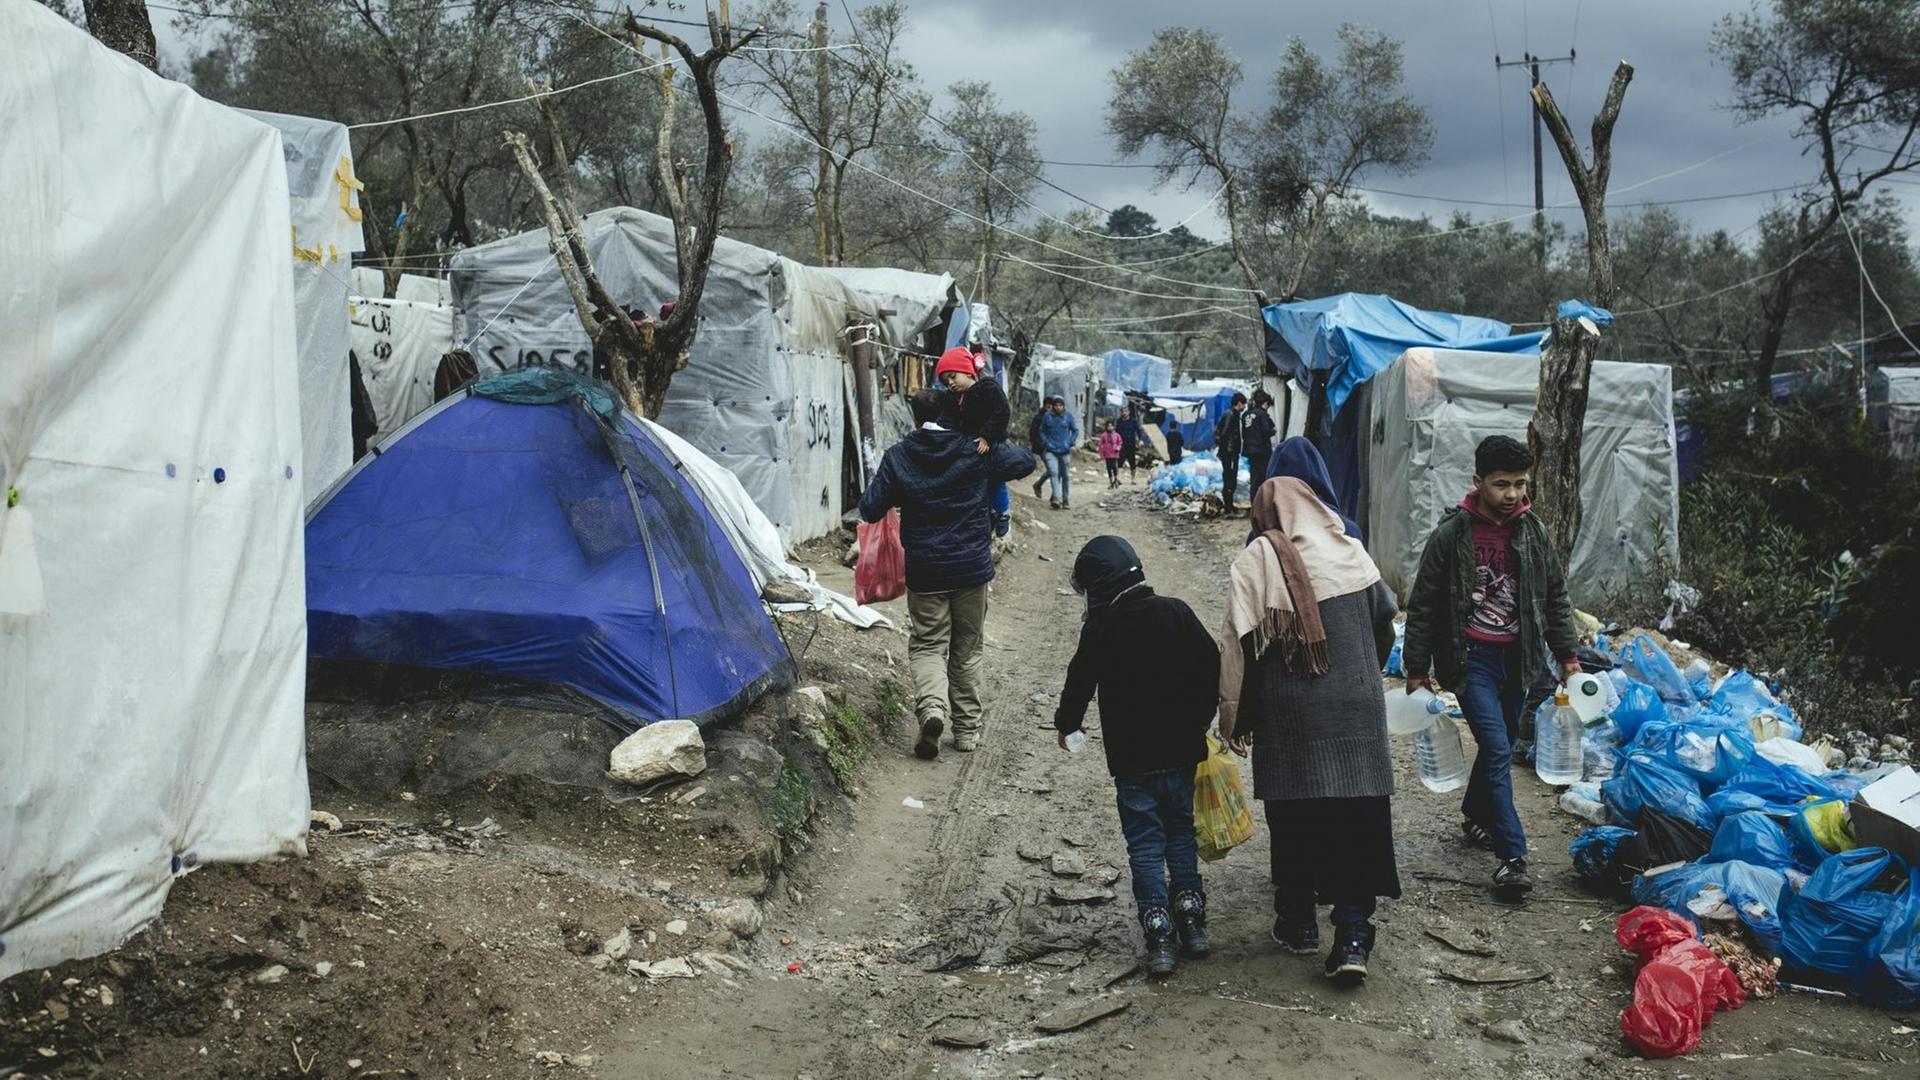 Eine Frau geht mit Kindern durch ein Flüchtlingslager, in welchem desolate Verhältnisse herrschen.